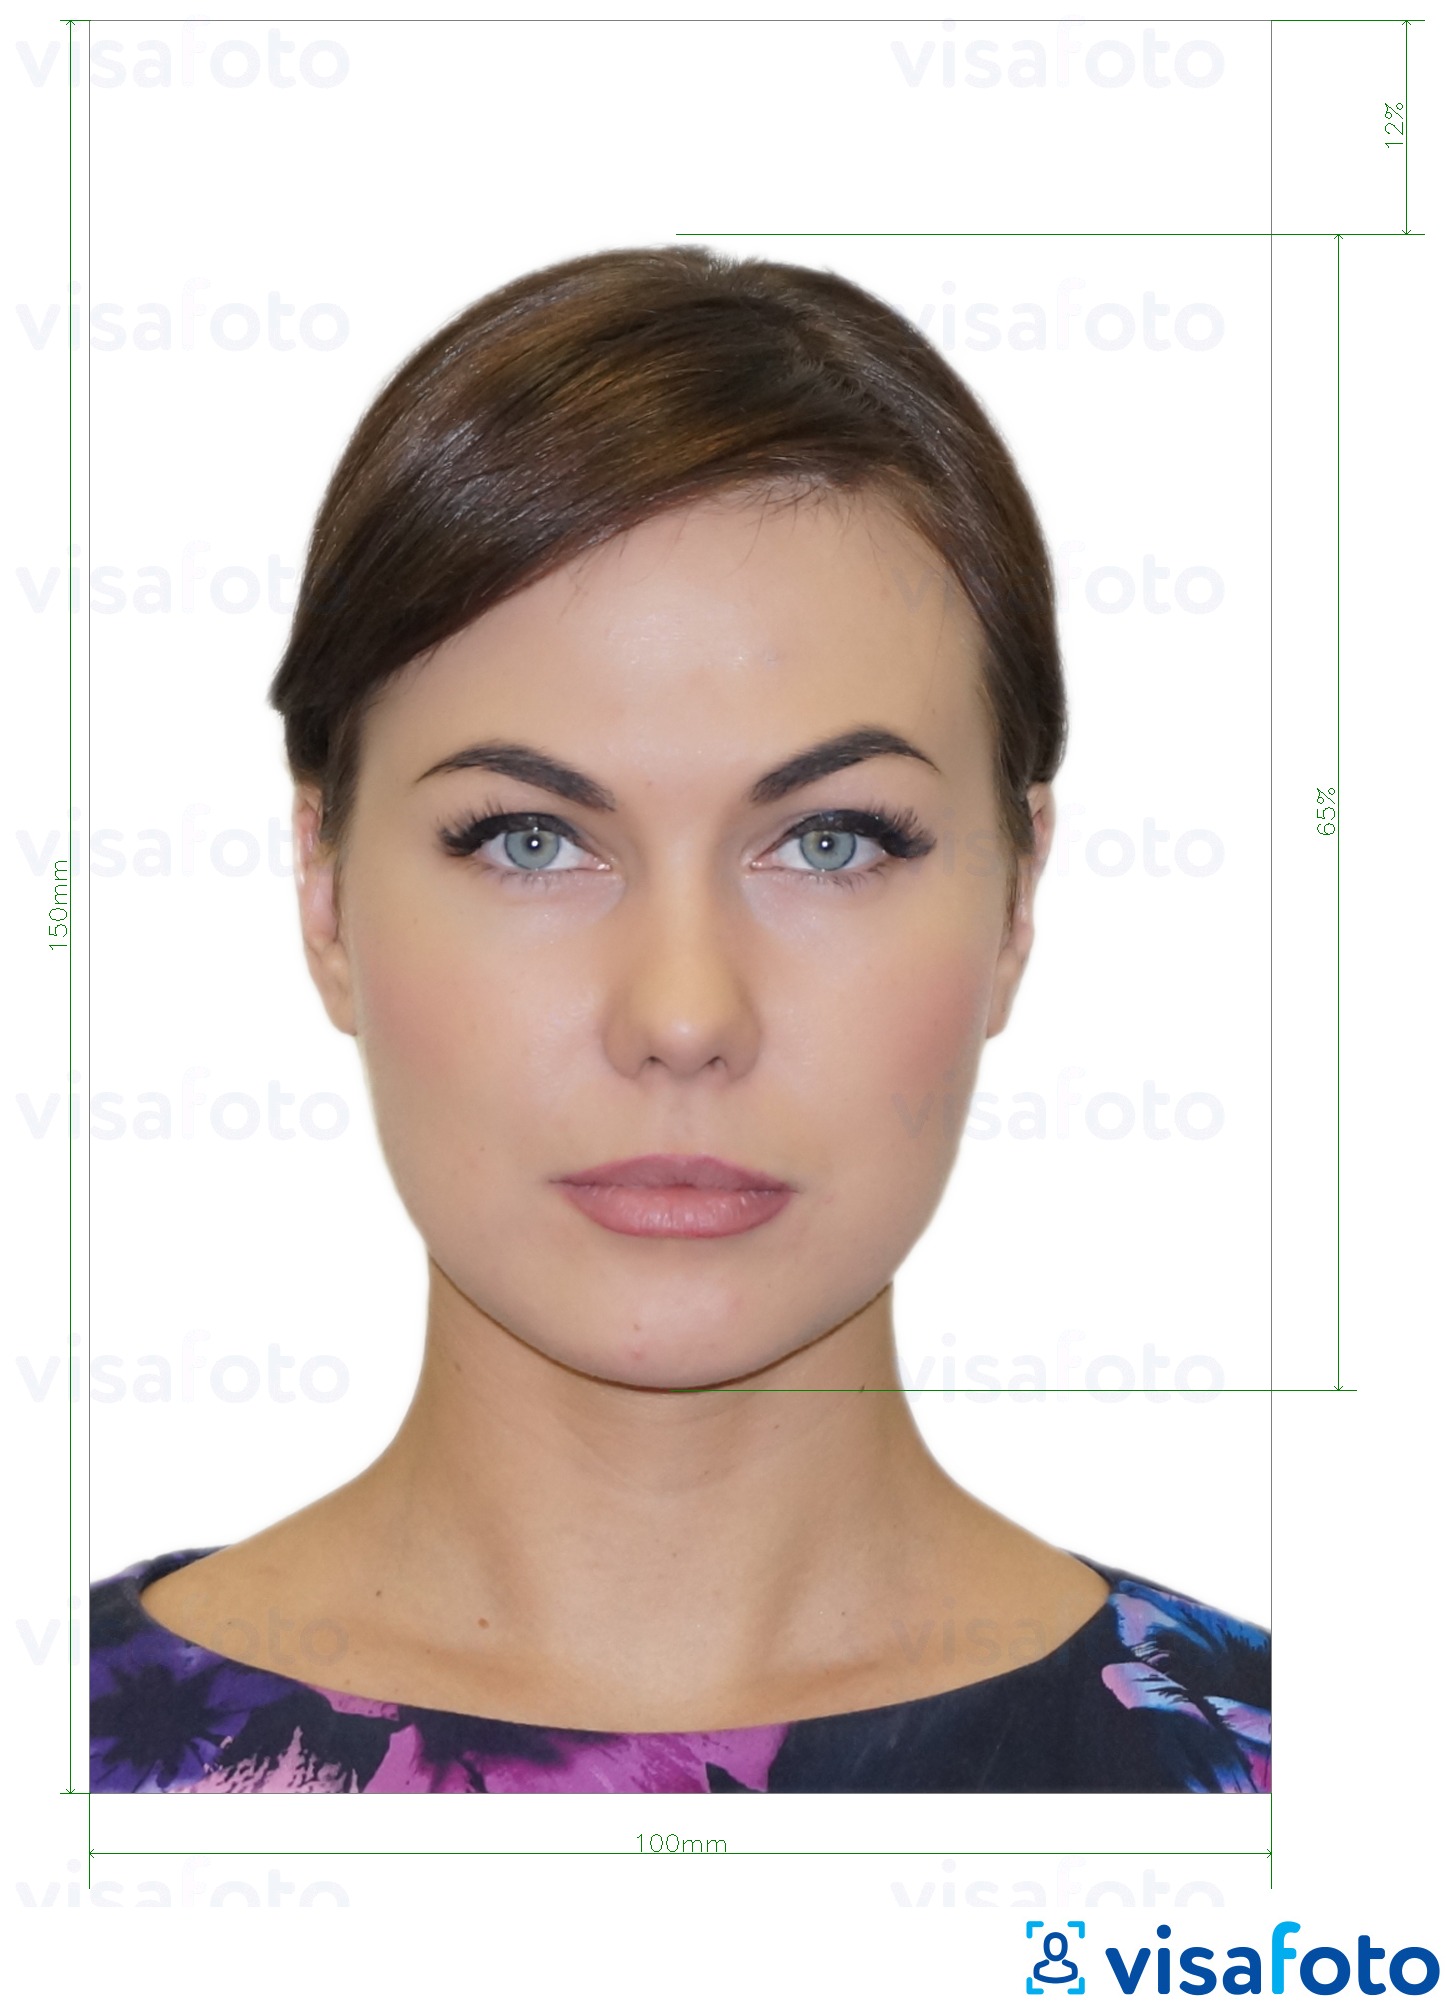 Fotobeispiel für Moldawien Ausweis (Buletin de identitate) 10x15 cm mit genauer größenangabe